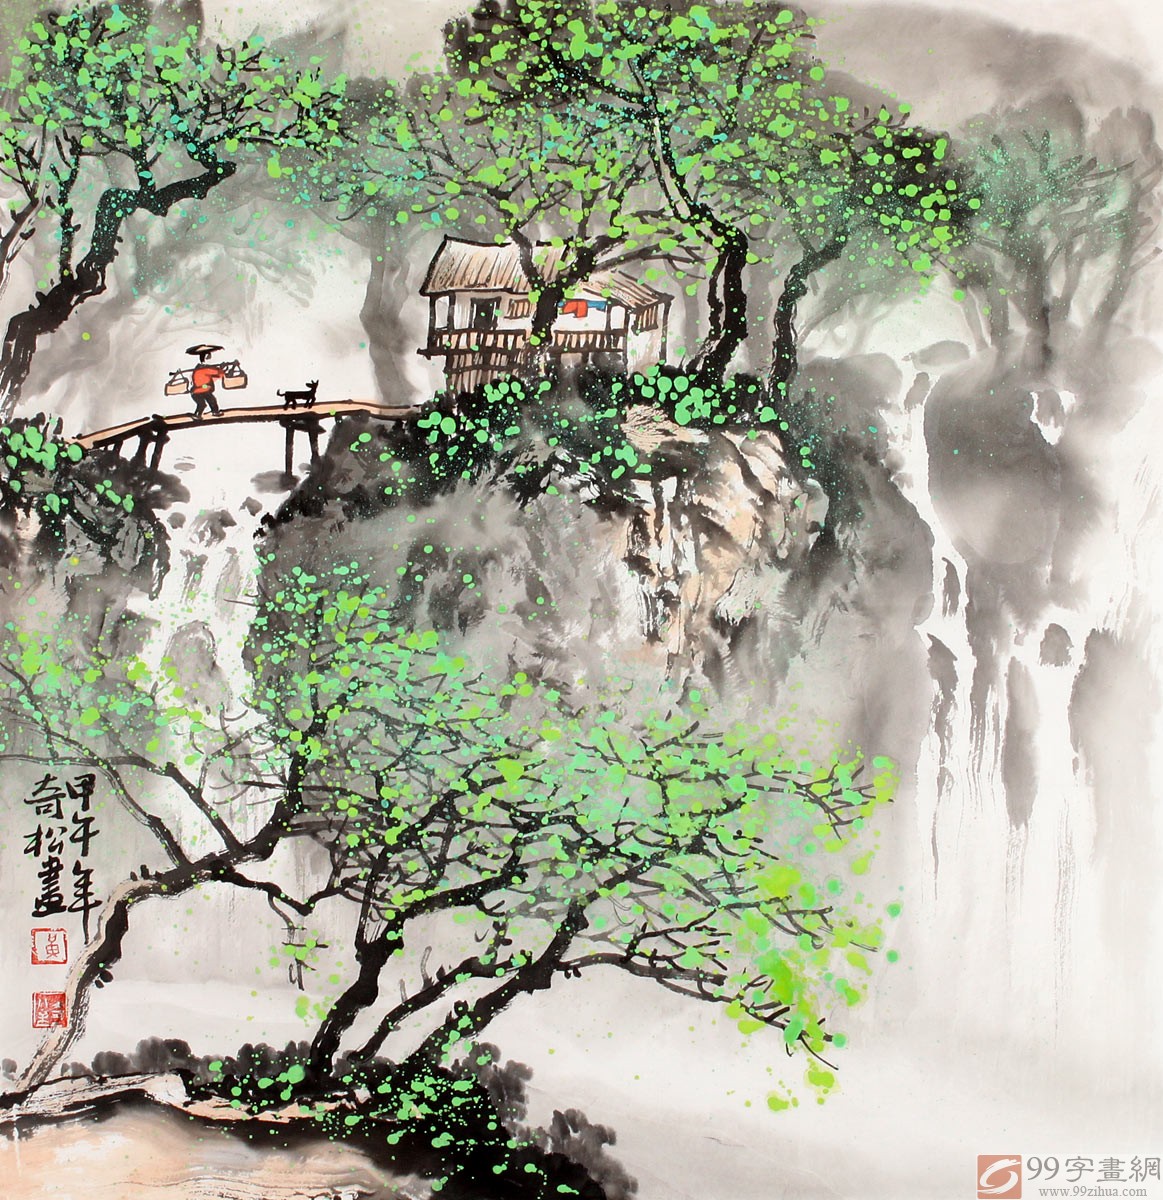 (摘自美术报) 在桂林山水画界,黄奇松是我较早关注的一位中青年画家